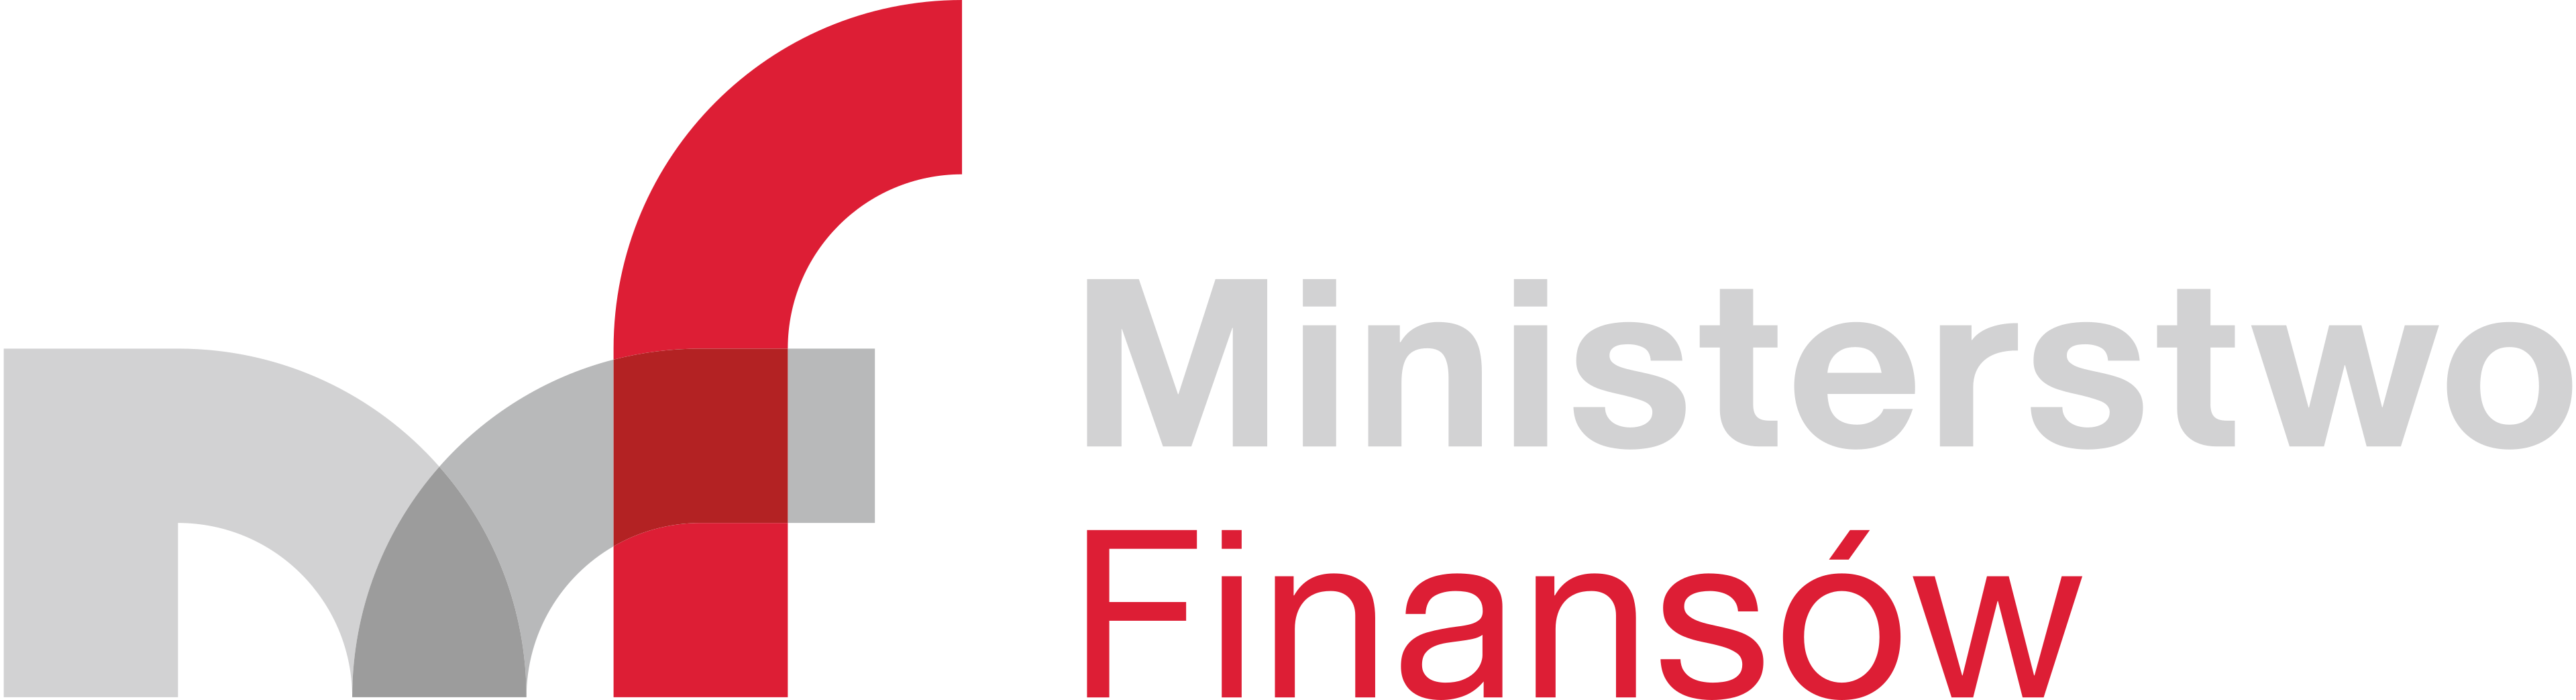 Logo-Ministerstwo-Finansów-svgRGBpoziom-190226-OK.png